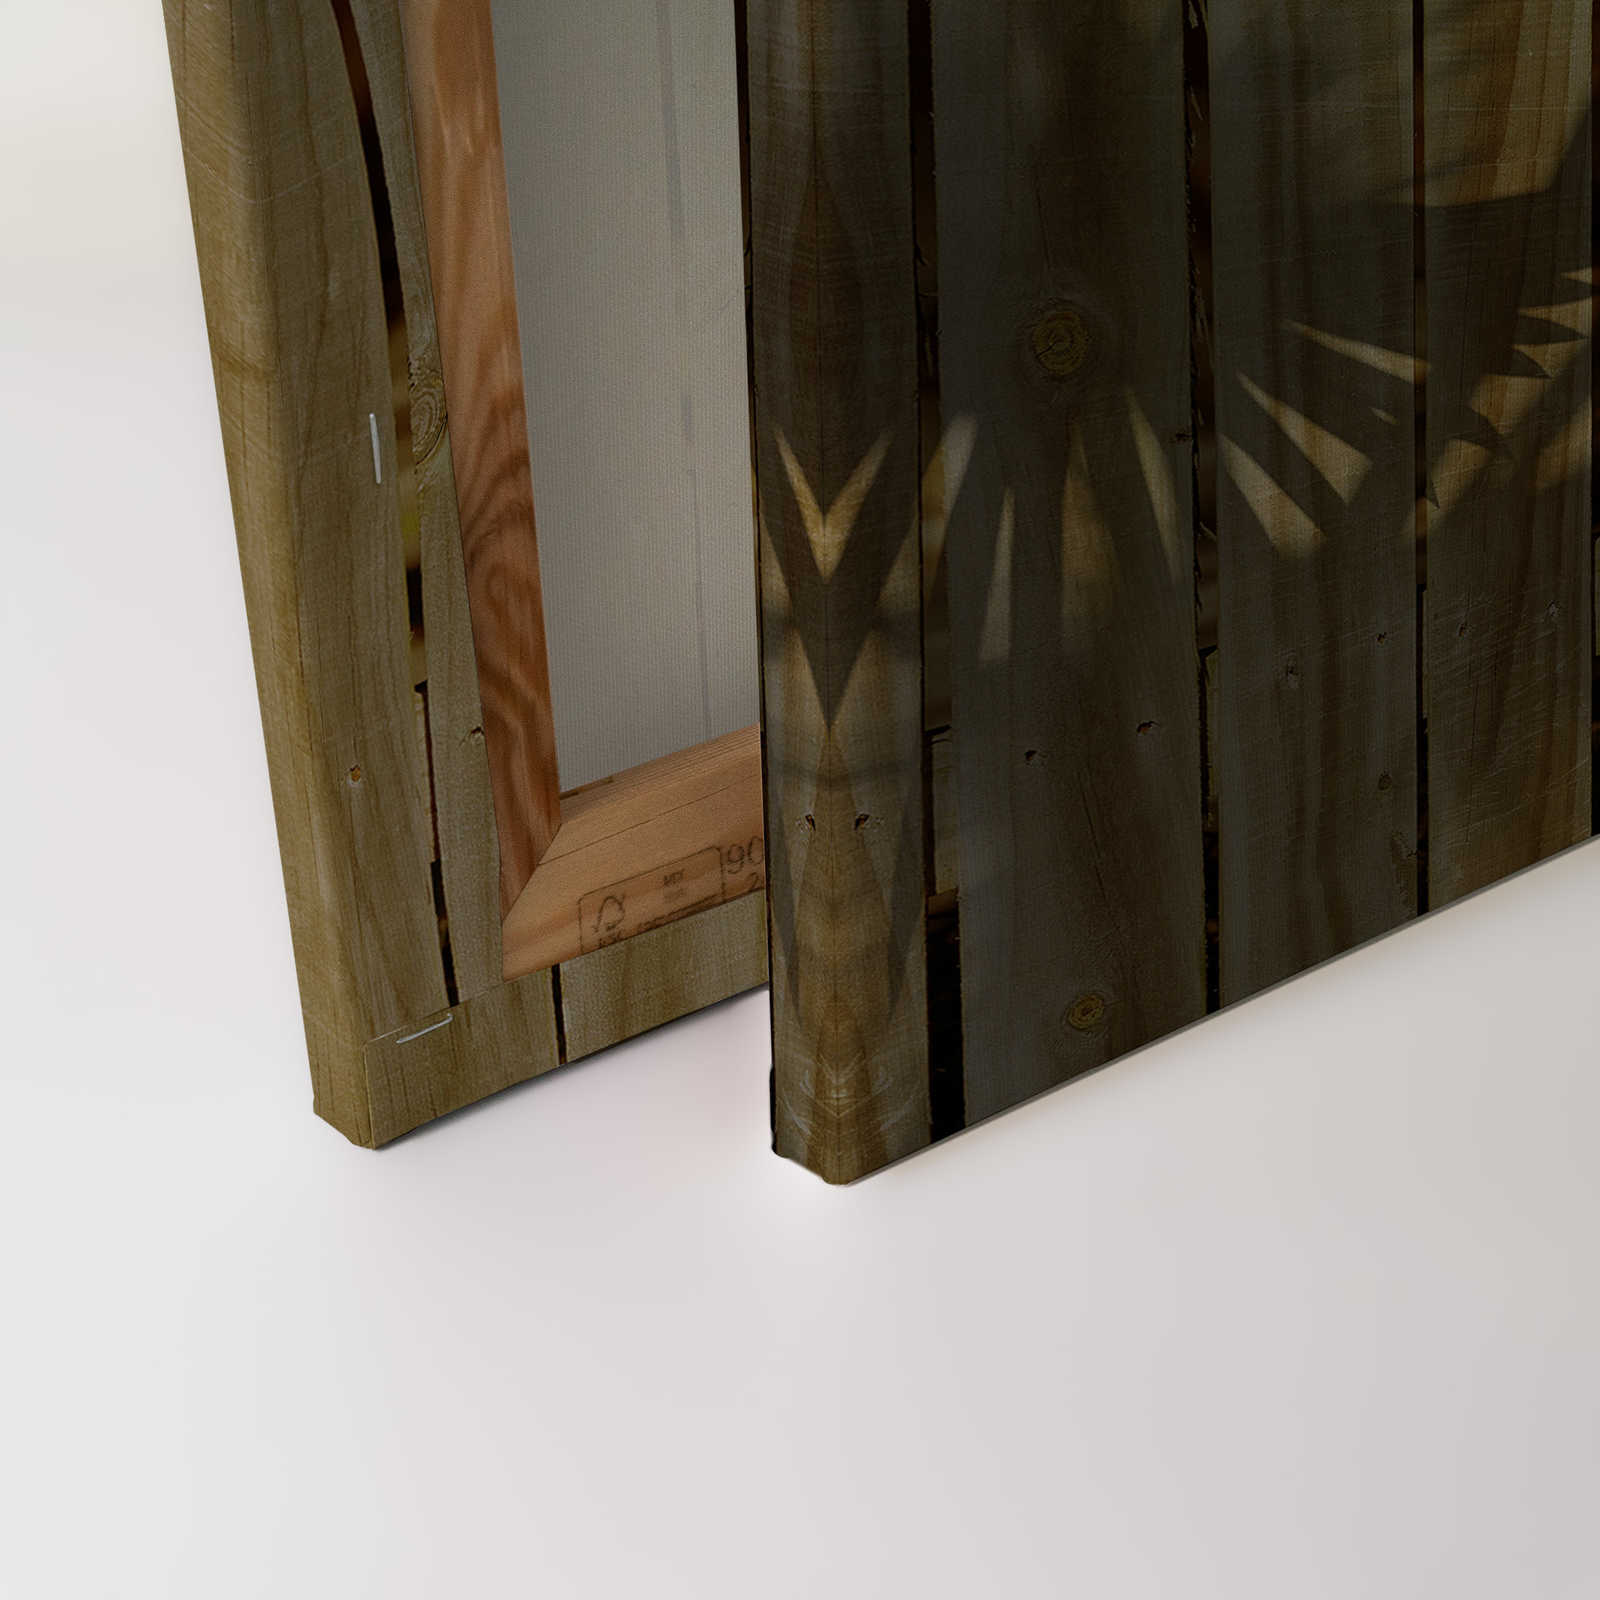             Cuadro en lienzo con aspecto de madera y sombra de hoja de palmera - 0,90 m x 0,60 m
        